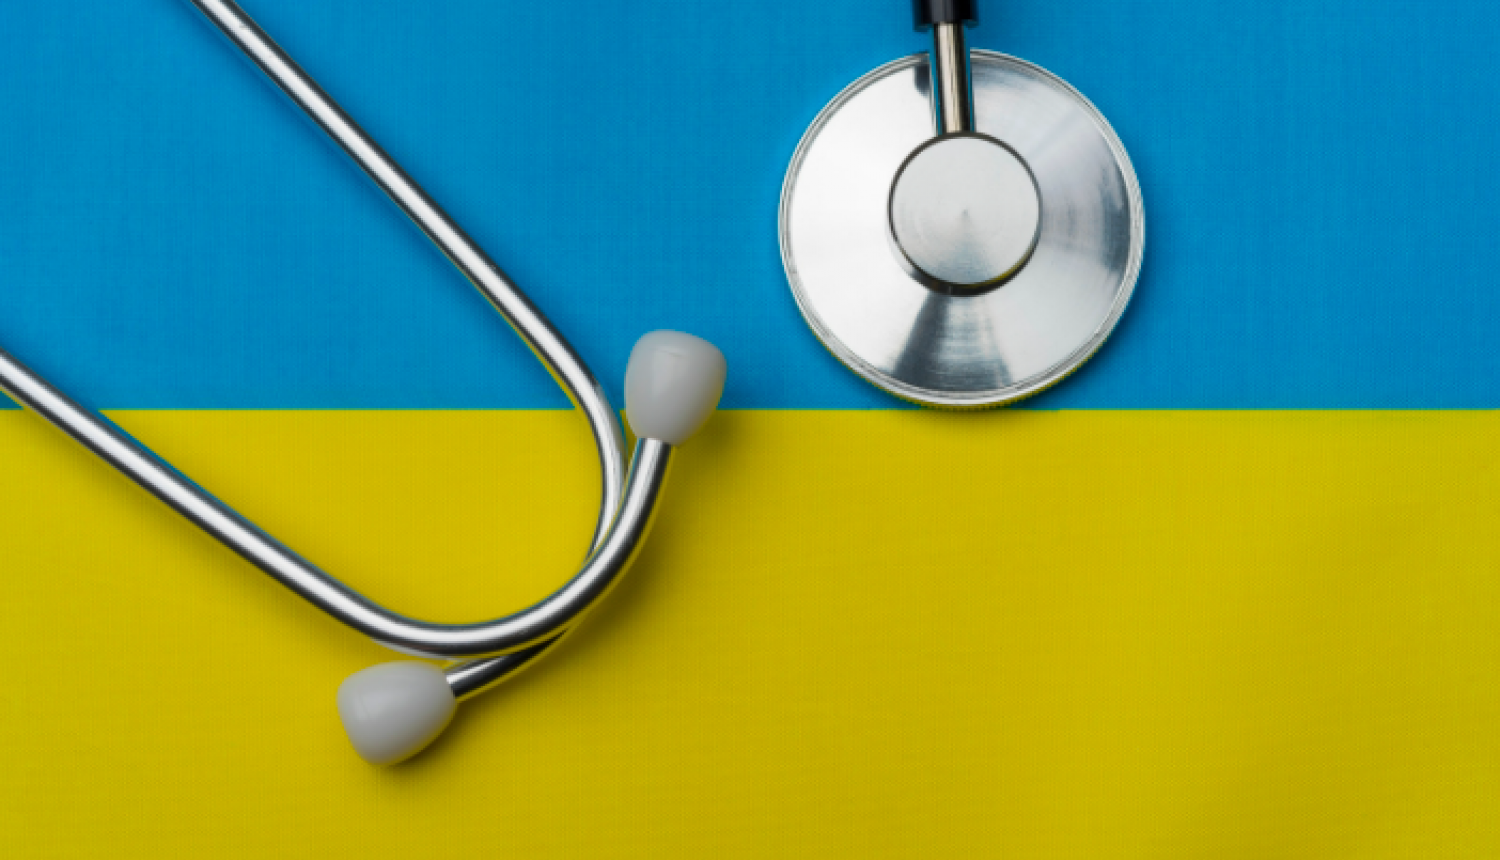 Vairāk nekā trīs tūkstošiem Ukrainas pilsoņu sniegtas konsultācijas par veselības aprūpes pakalpojumu saņemšanas iespējām